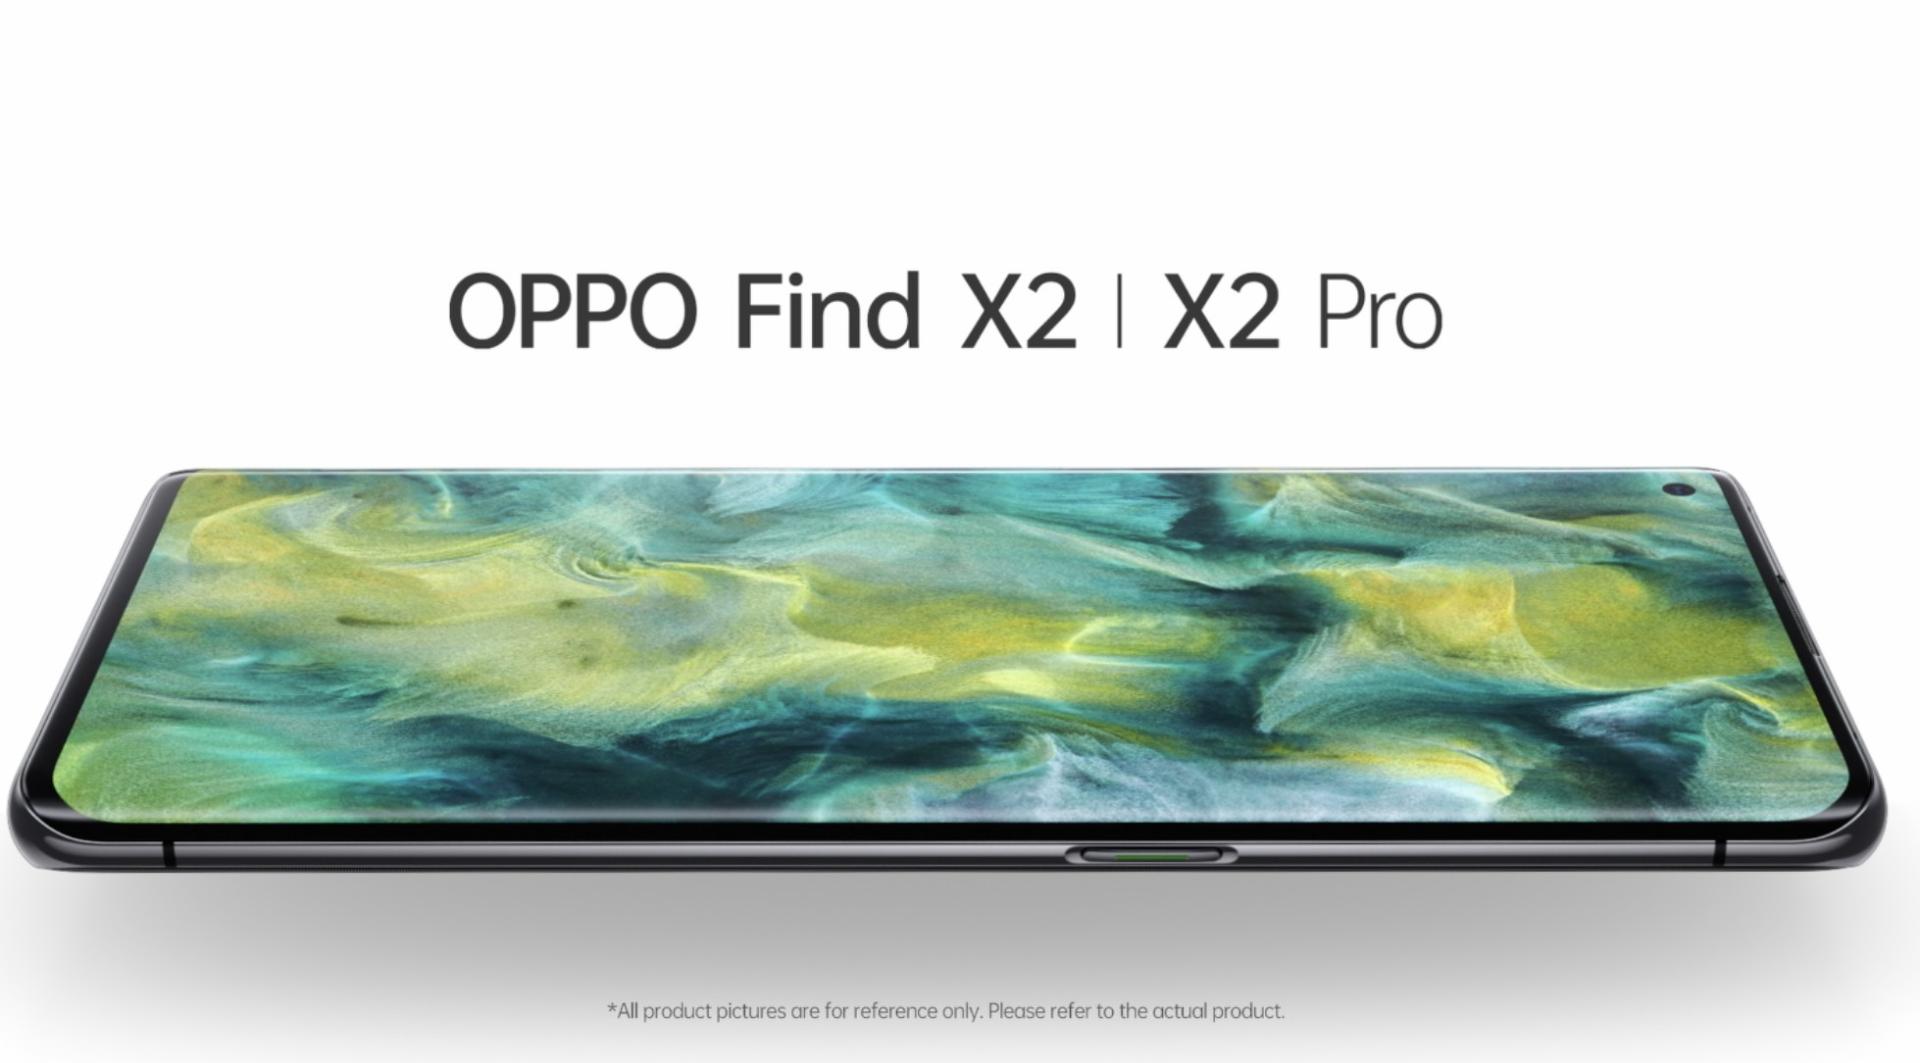 OPPO OPPO Find X2 | X2 Pro